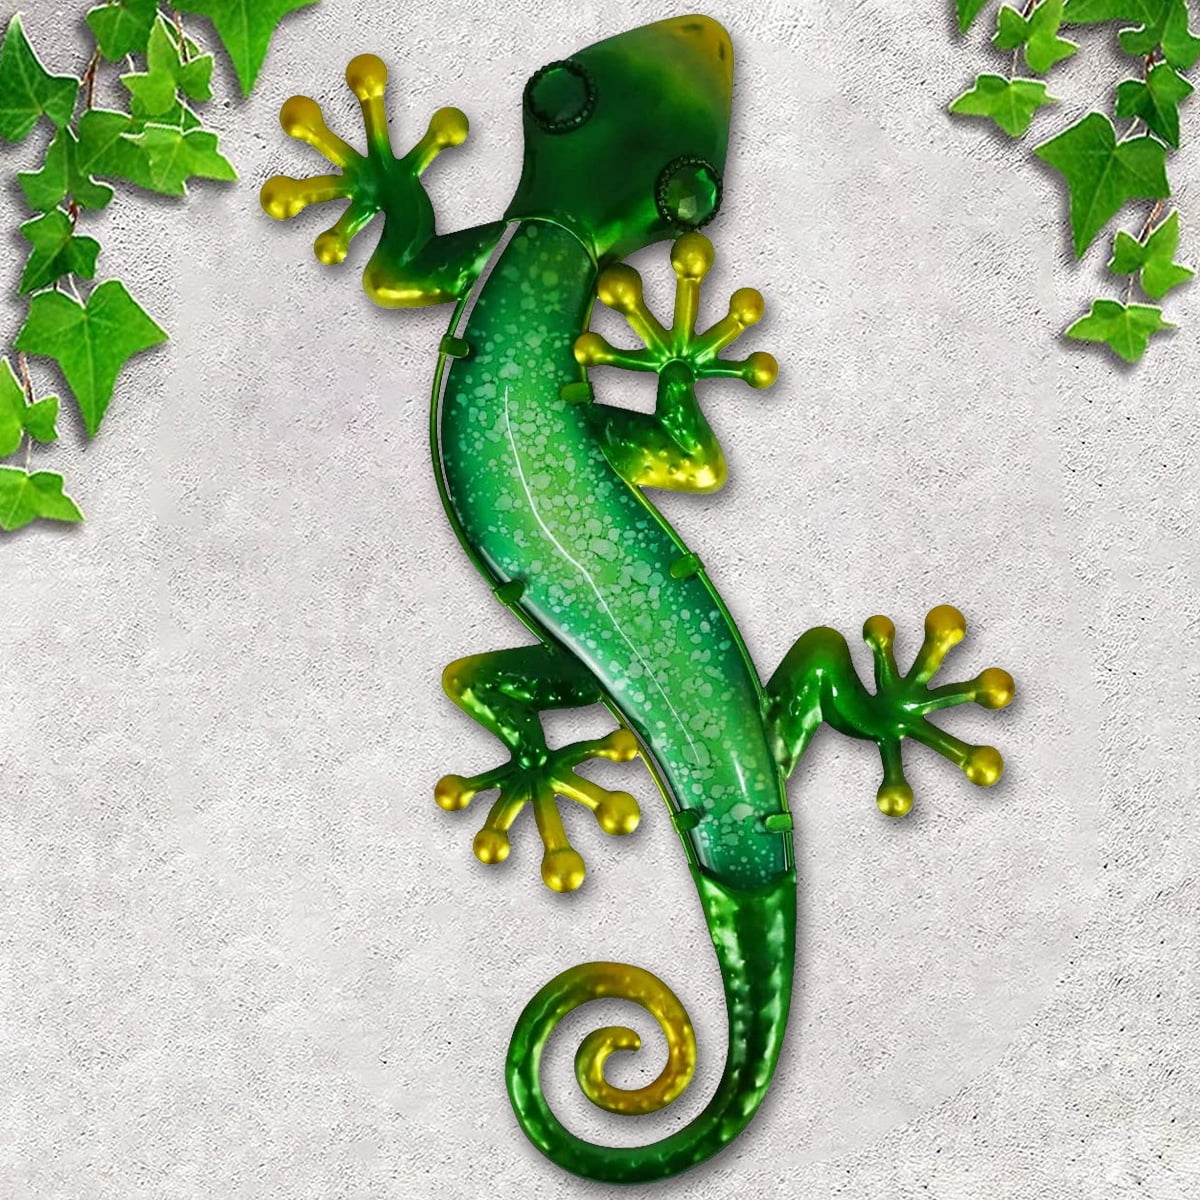 Lieonvis Gecko Wall Decor Metal Gecko Wall Art 3D Lizard Metal